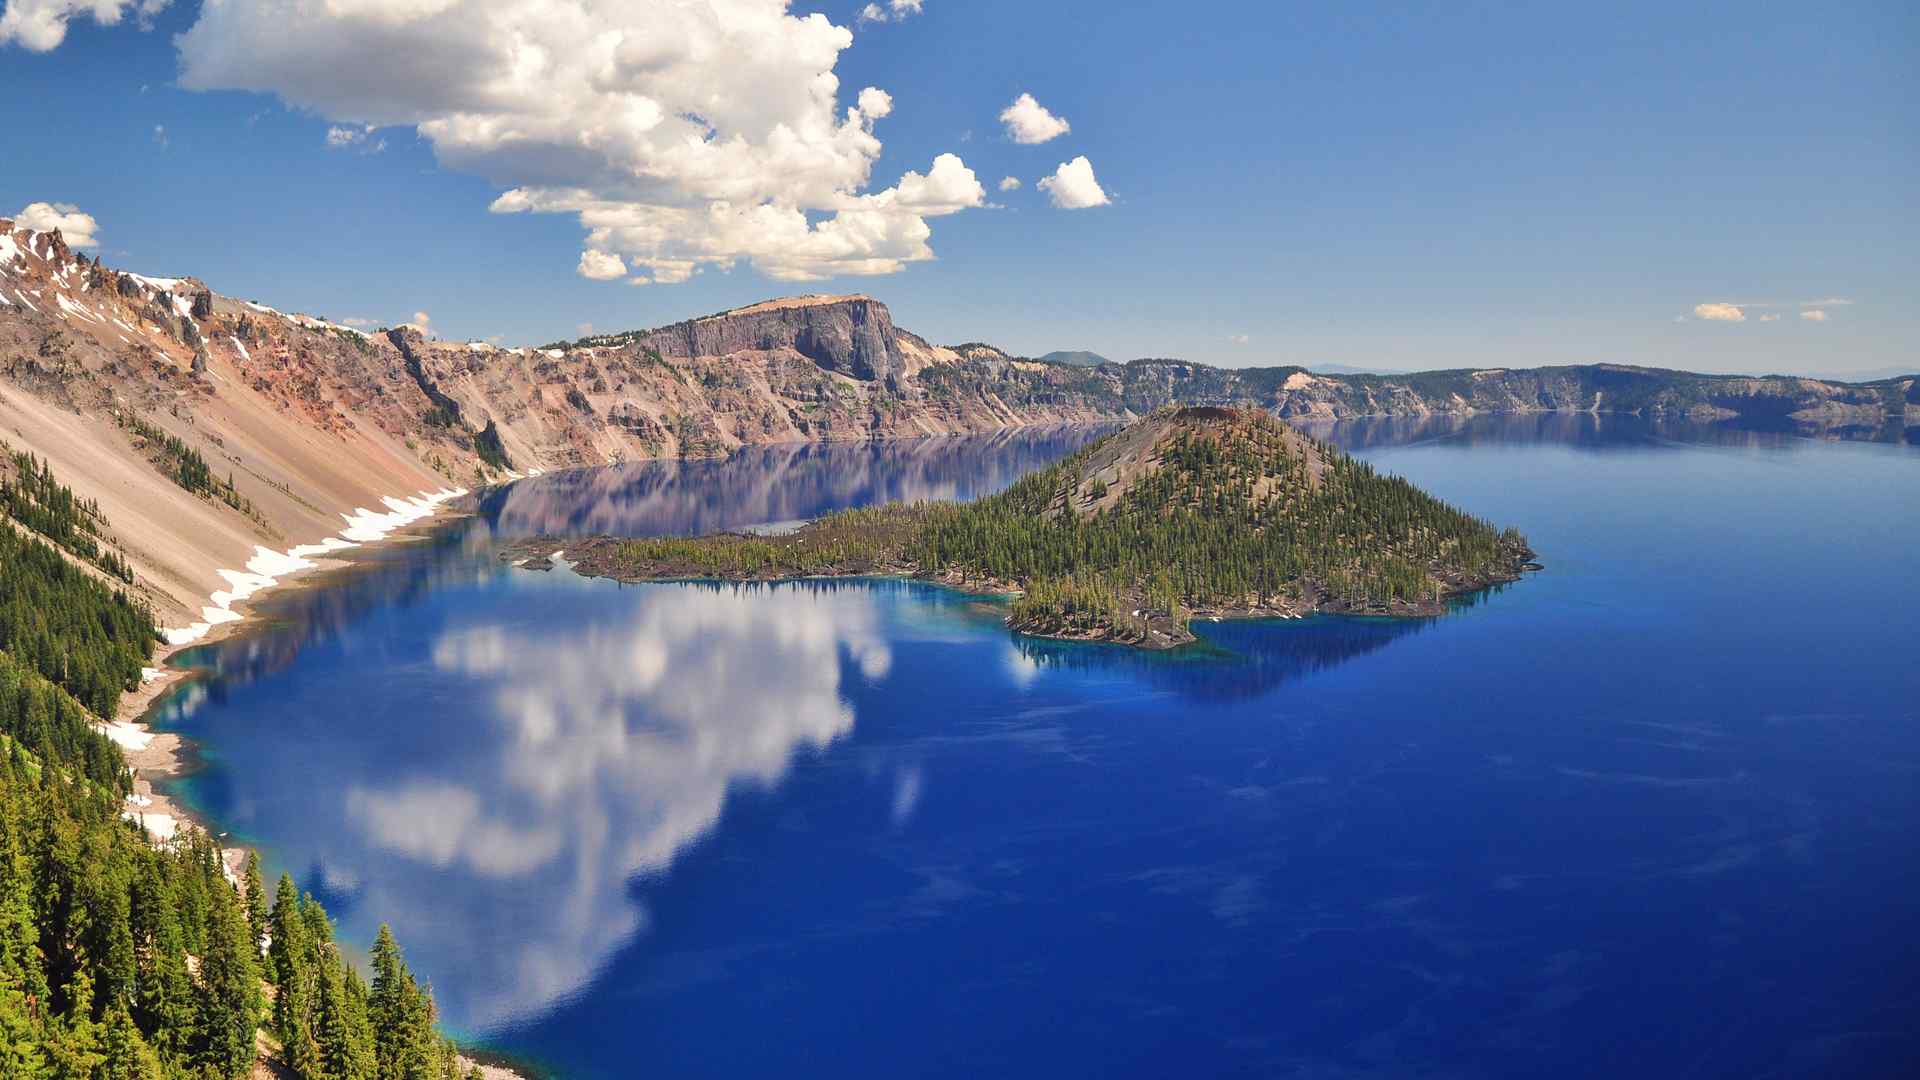 震撼视觉的美国俄勒冈火山湖风景桌面壁纸 第一辑